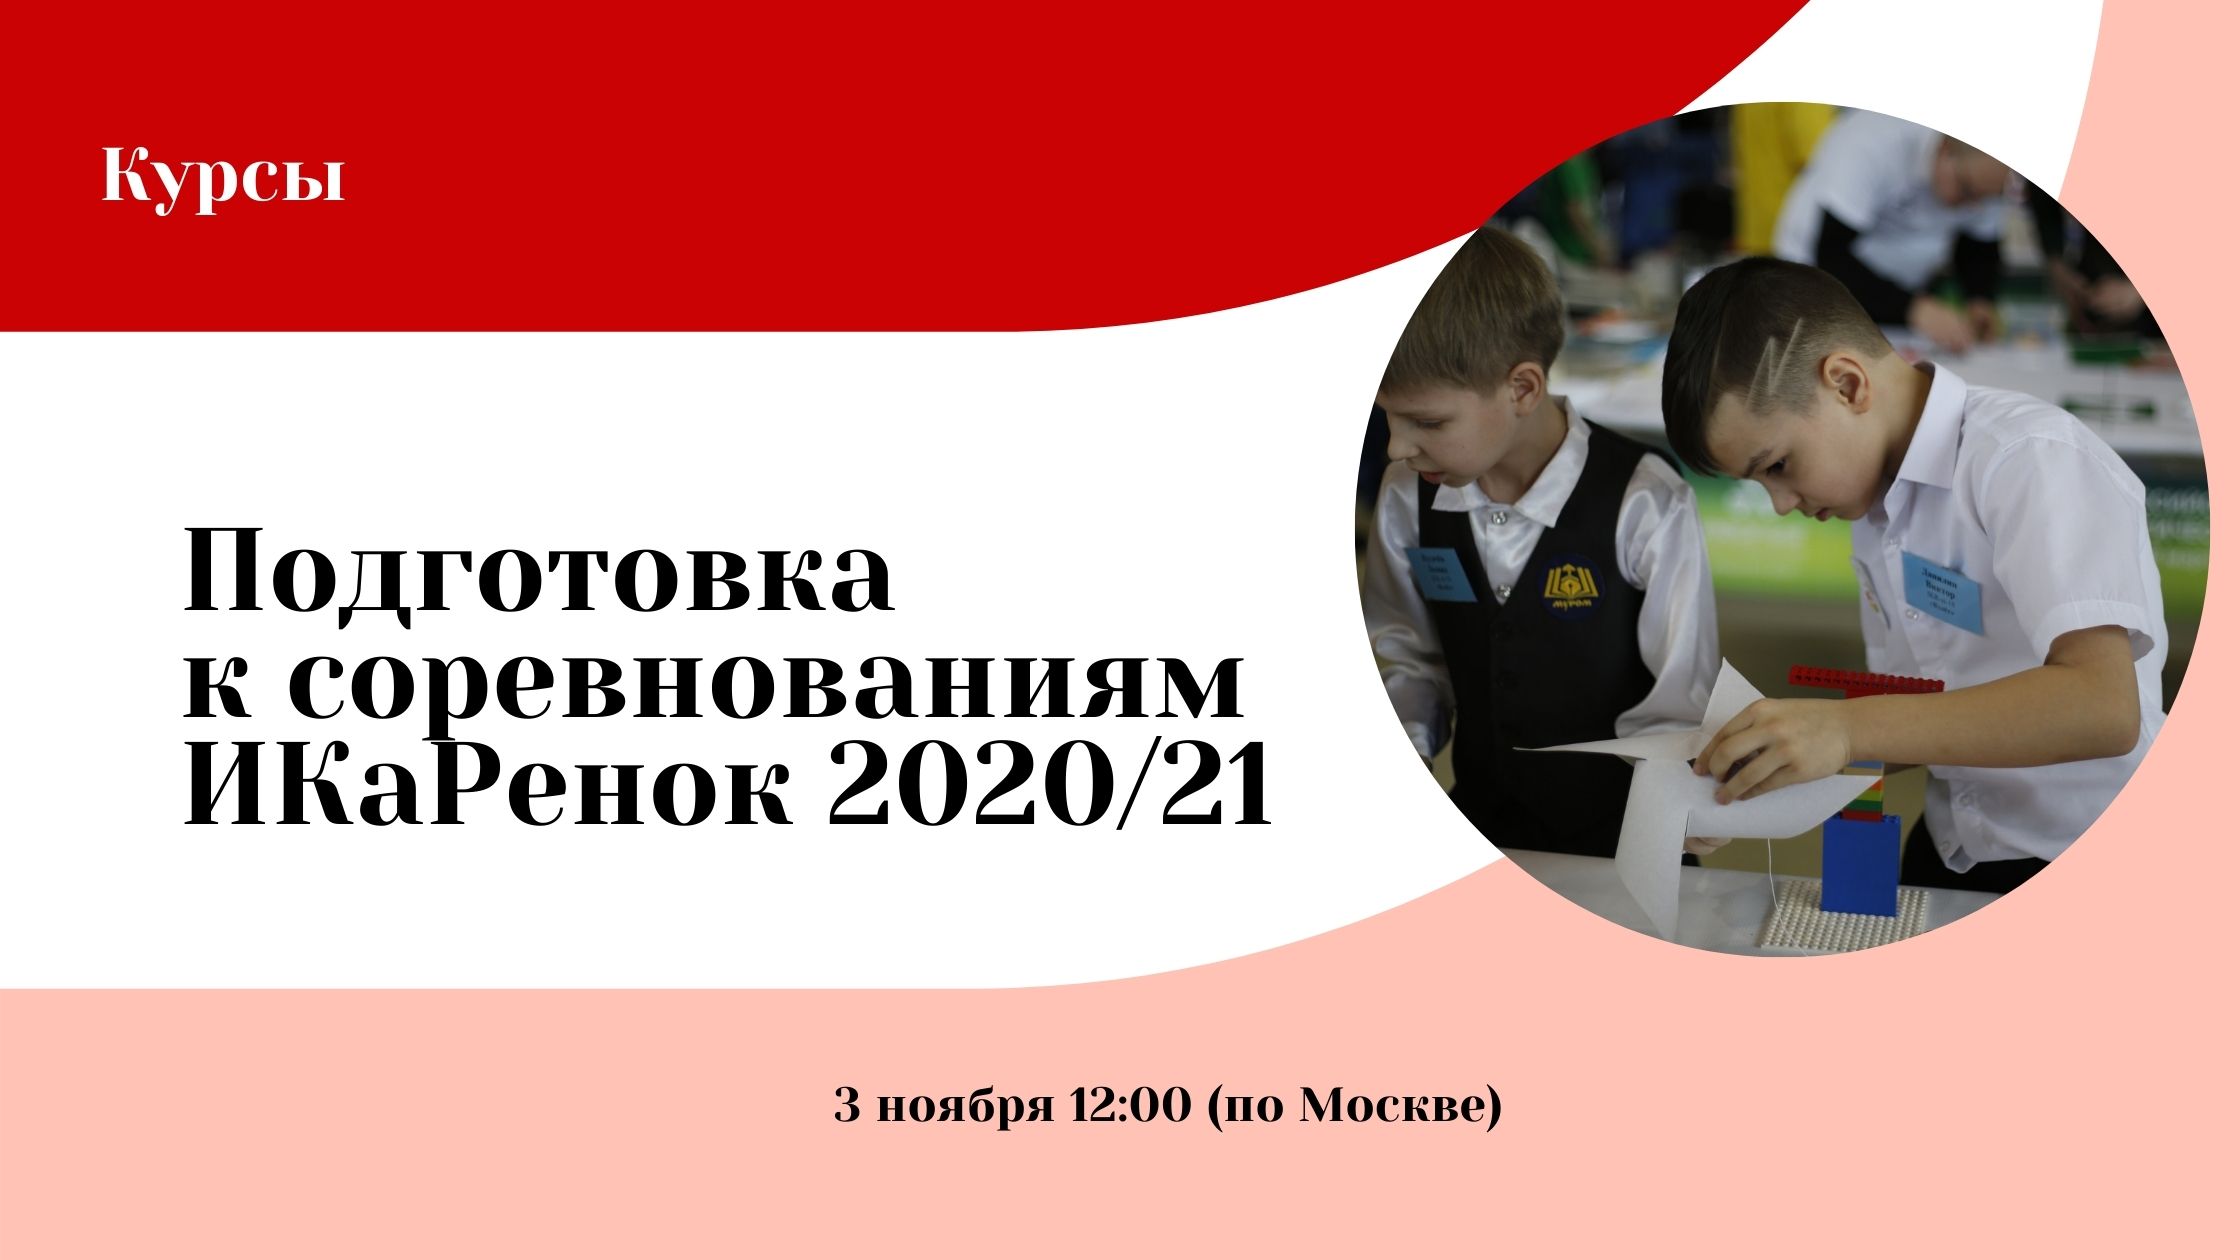 Готовимся к соревнованиям «ИКаРенок» сезона 2020/21!